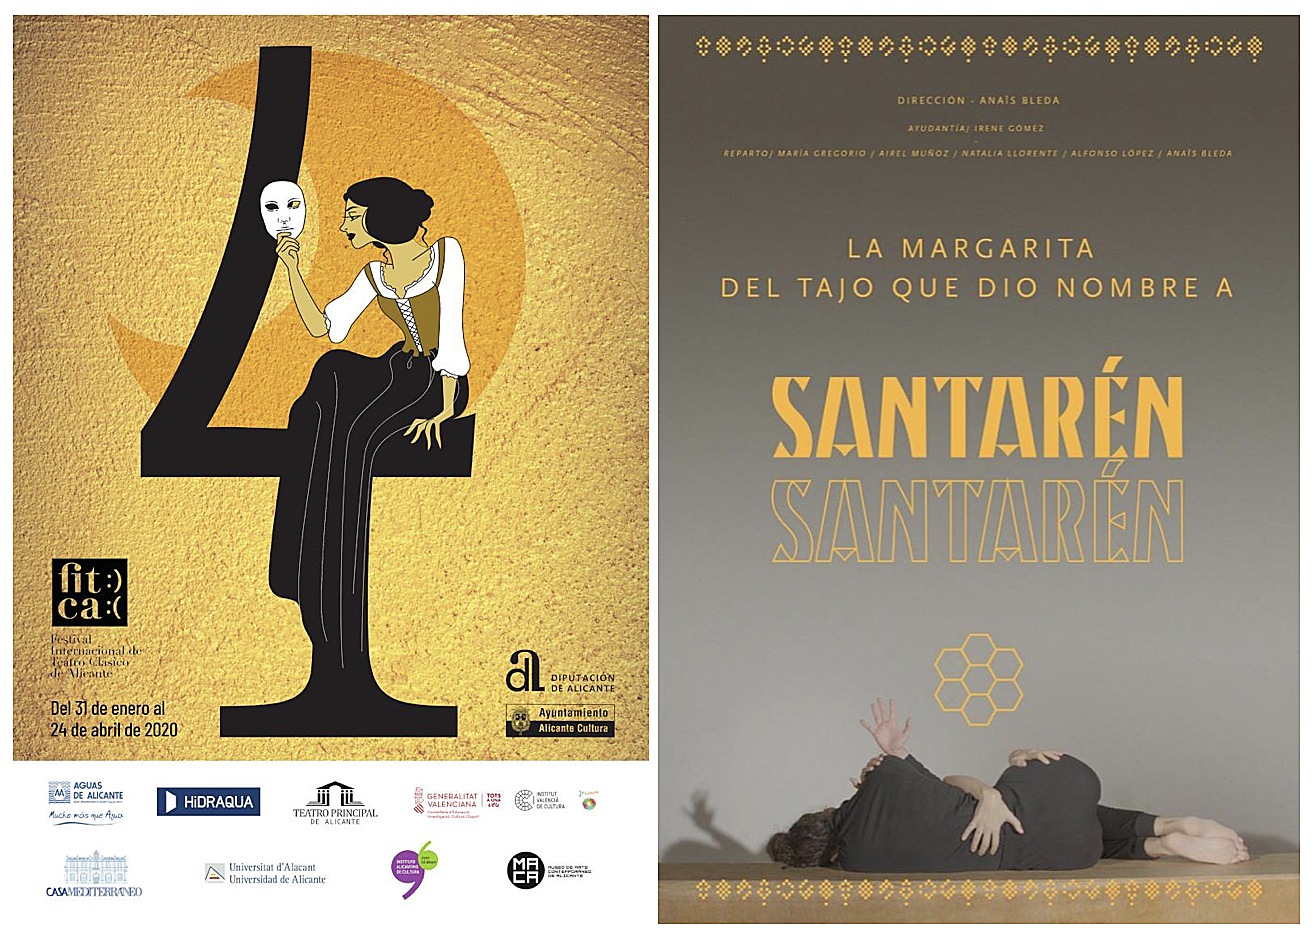 “La Margarita del Tajo que dio nombre a Santarén” abrirá el Festival Internacional de Teatro Clásico de Alicante